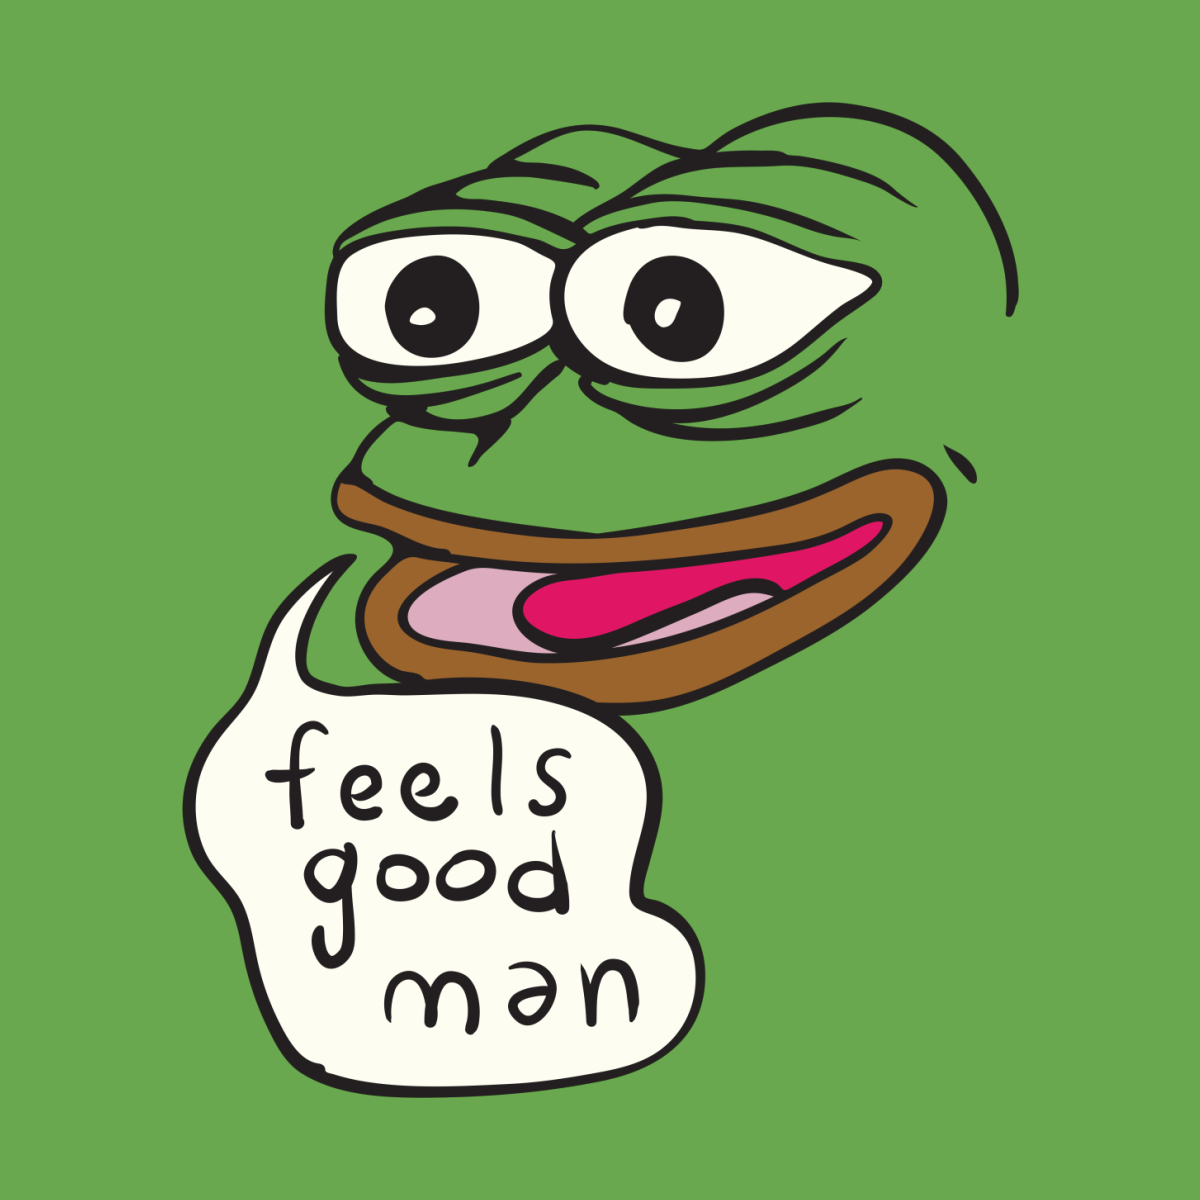 Good man 5. Pepe feels good man. Pepe Frog feels good man. Feeling Пепе. Feels good man Мем.